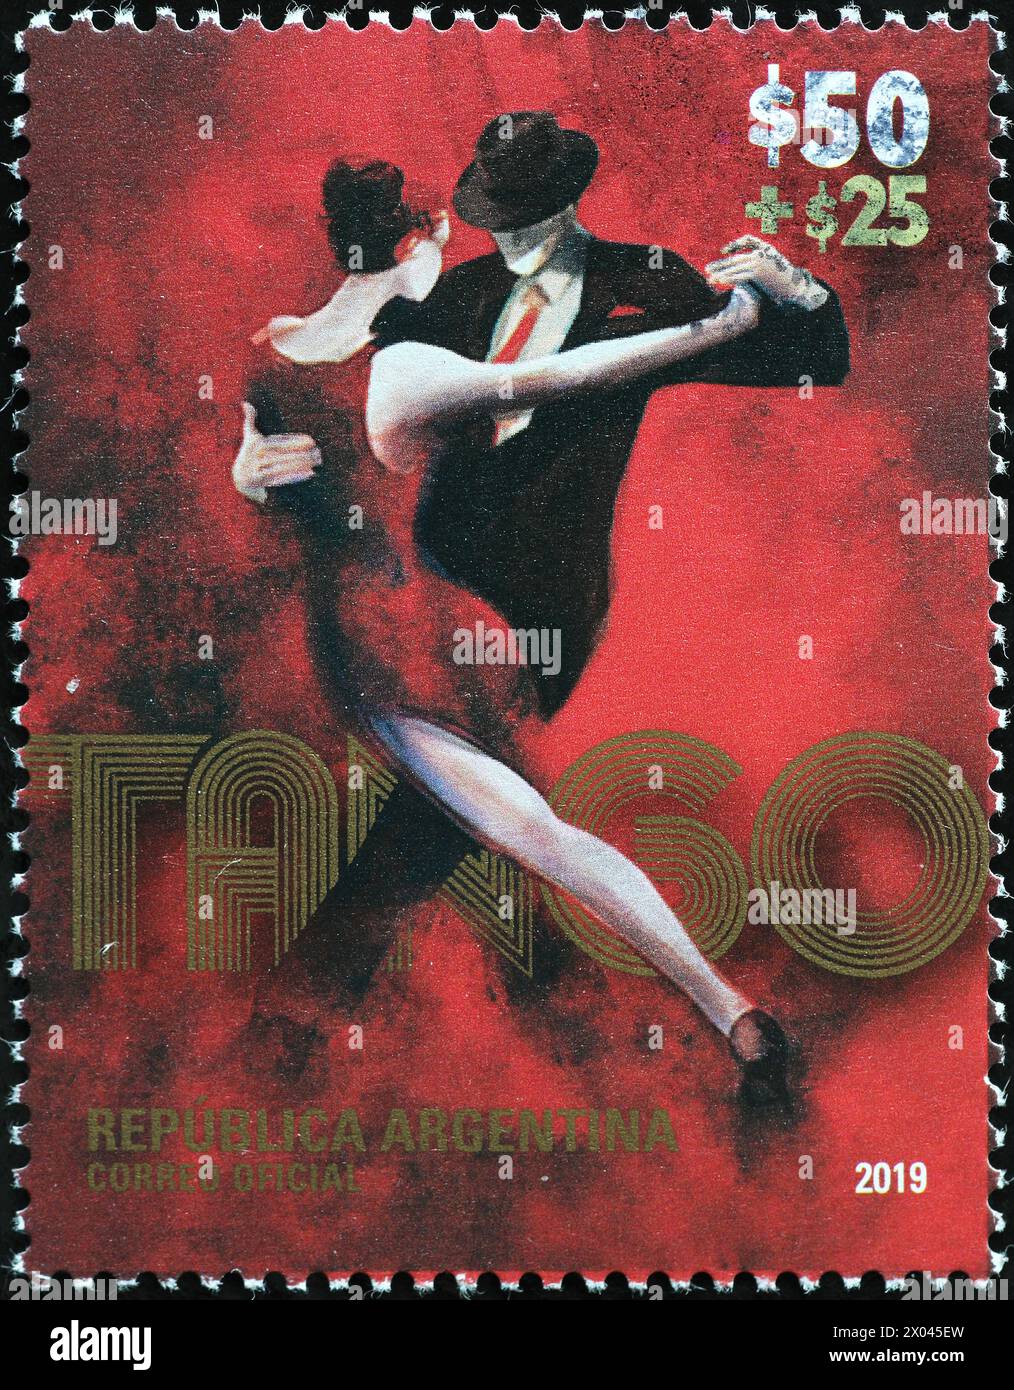 Tradizione del Tango celebrata con francobollo argentino Foto Stock